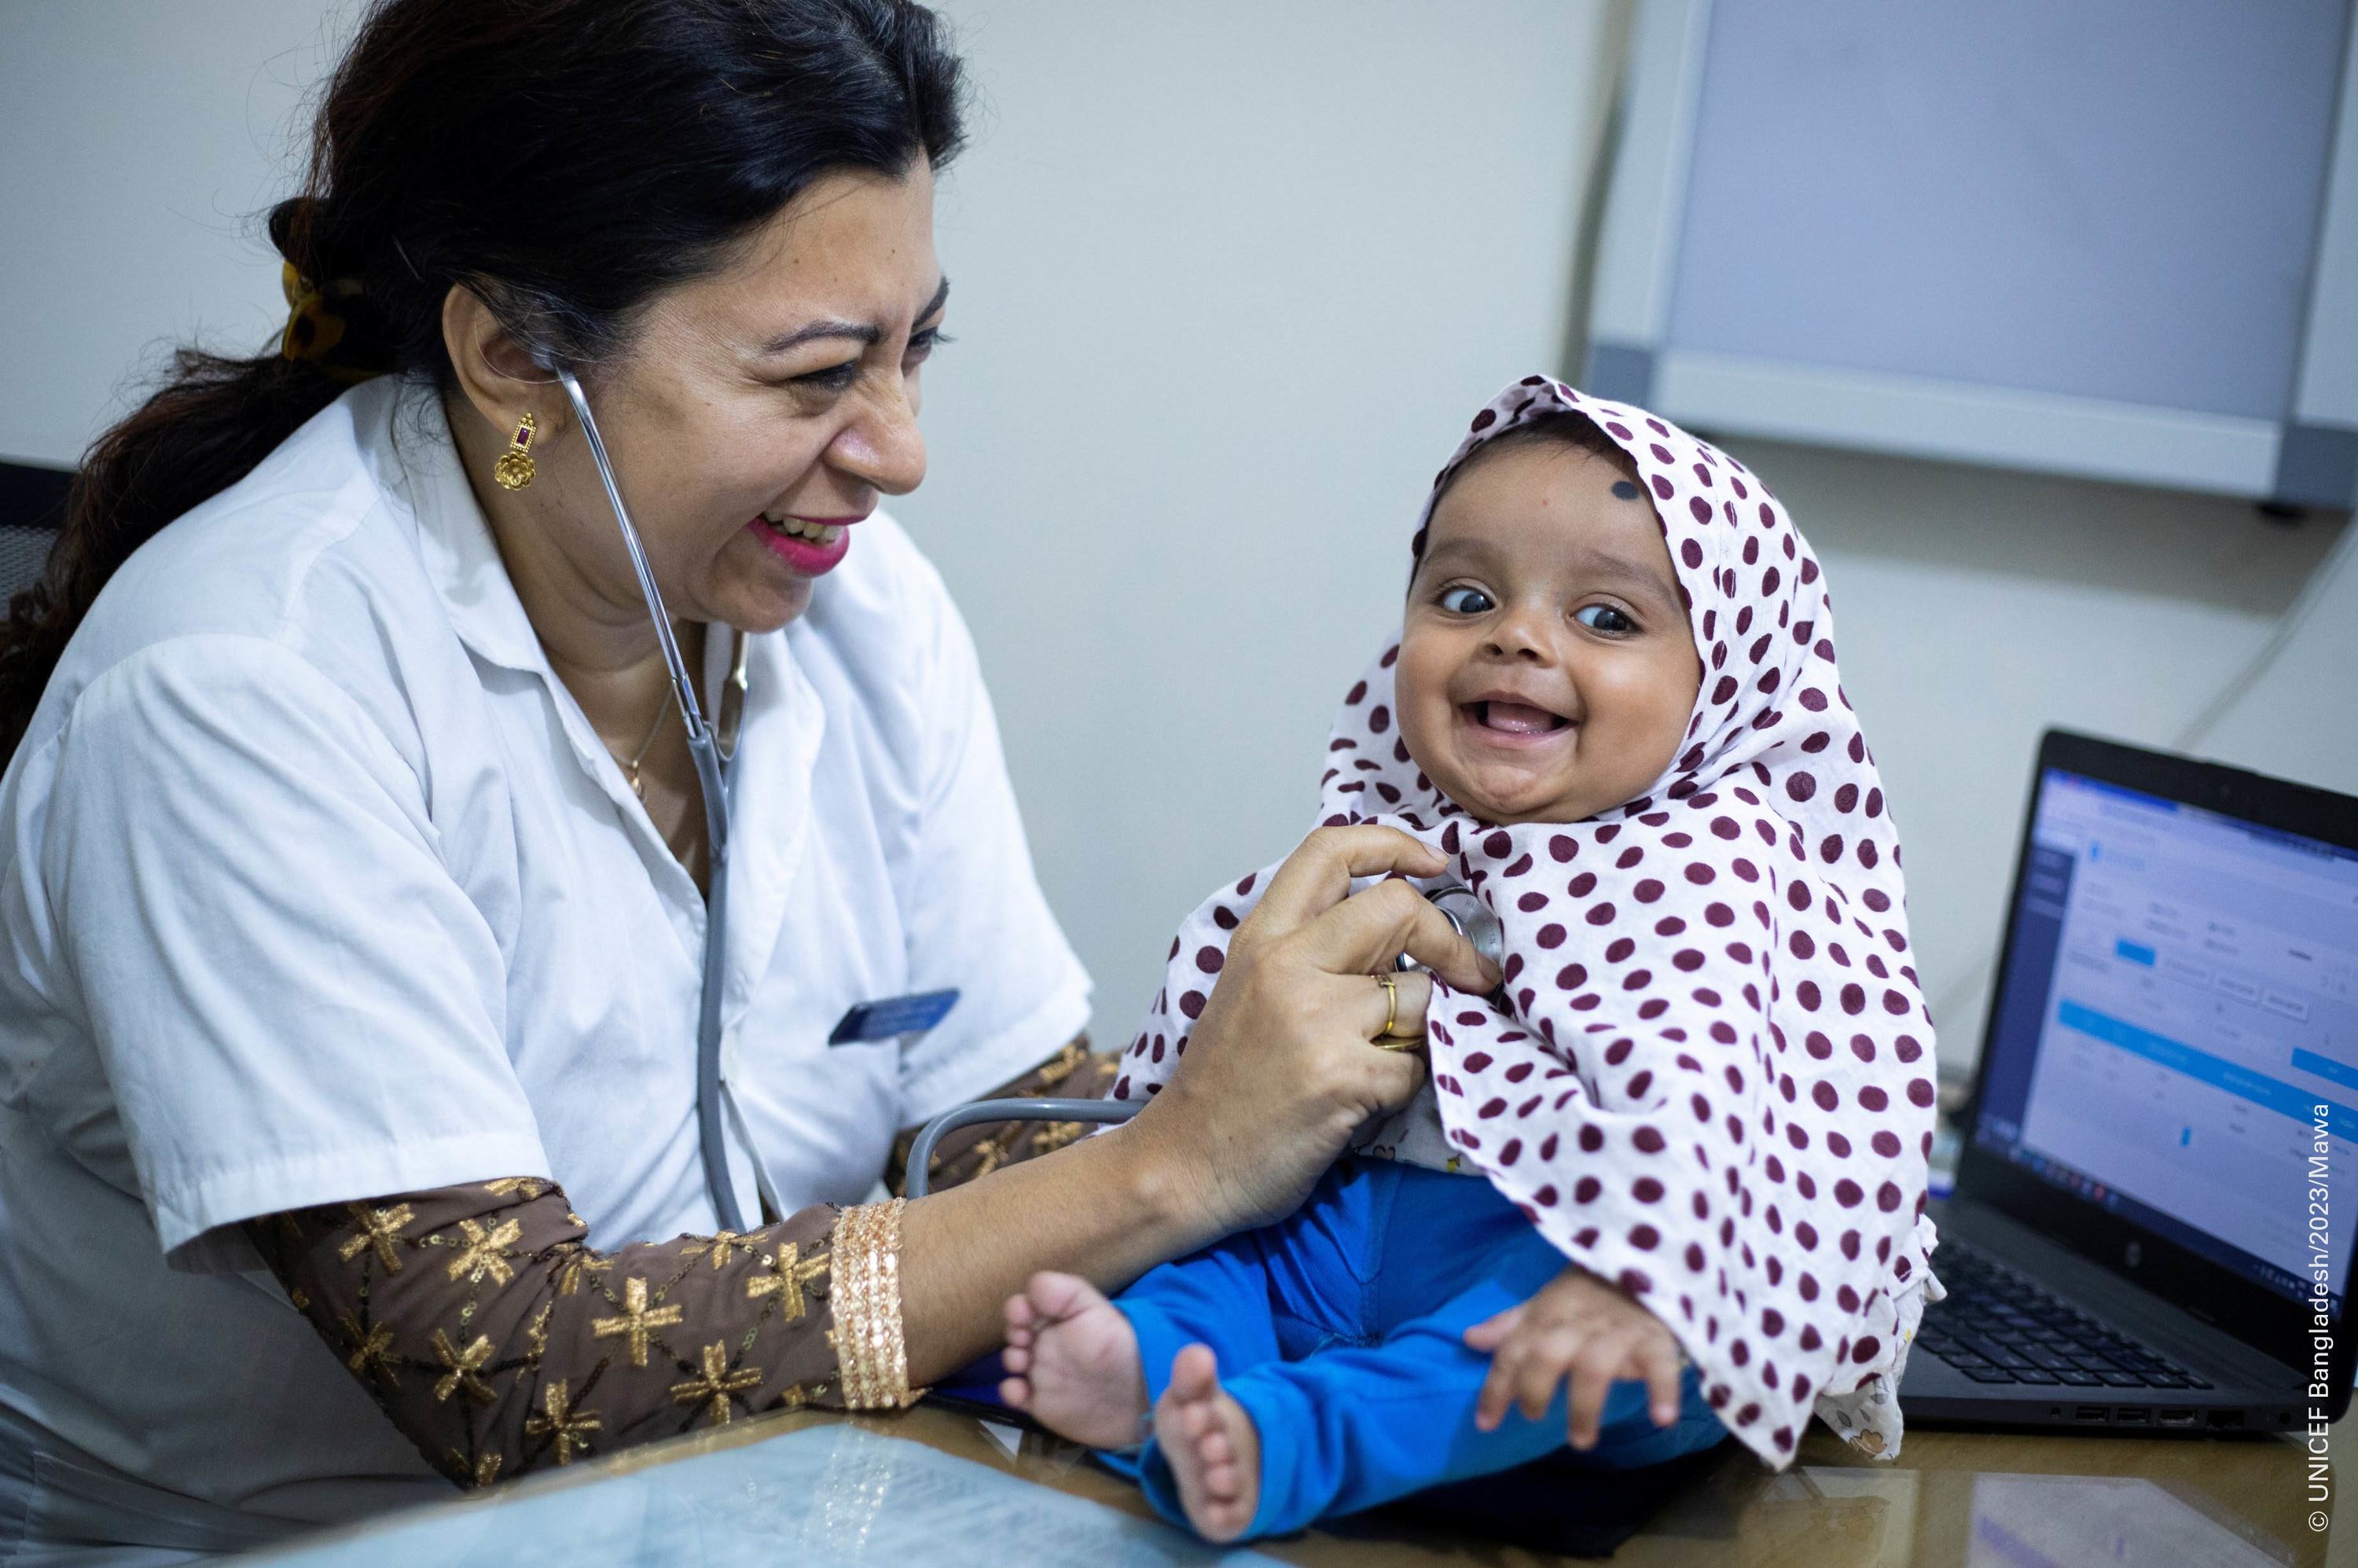 التغطية الصحية الشاملة تساعد في تعزيز حق الطفل في الصحة عن طريق إزالة العوائق التي تعترض الخدمات الصحية. 